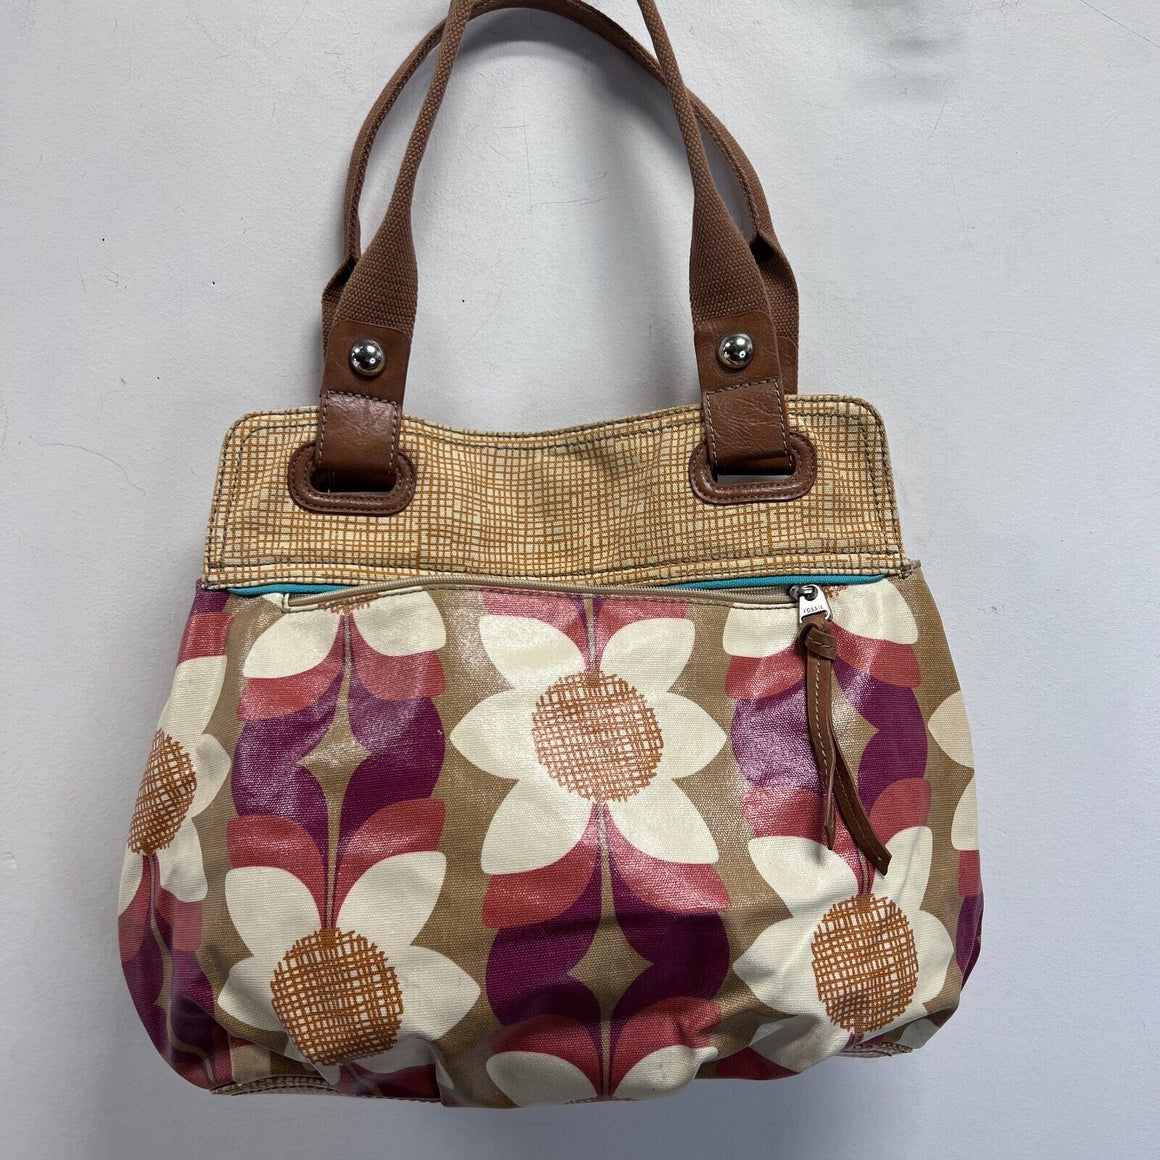 Buy SIBY Women's Shoulder Tote Bag (Khakhi) at Amazon.in